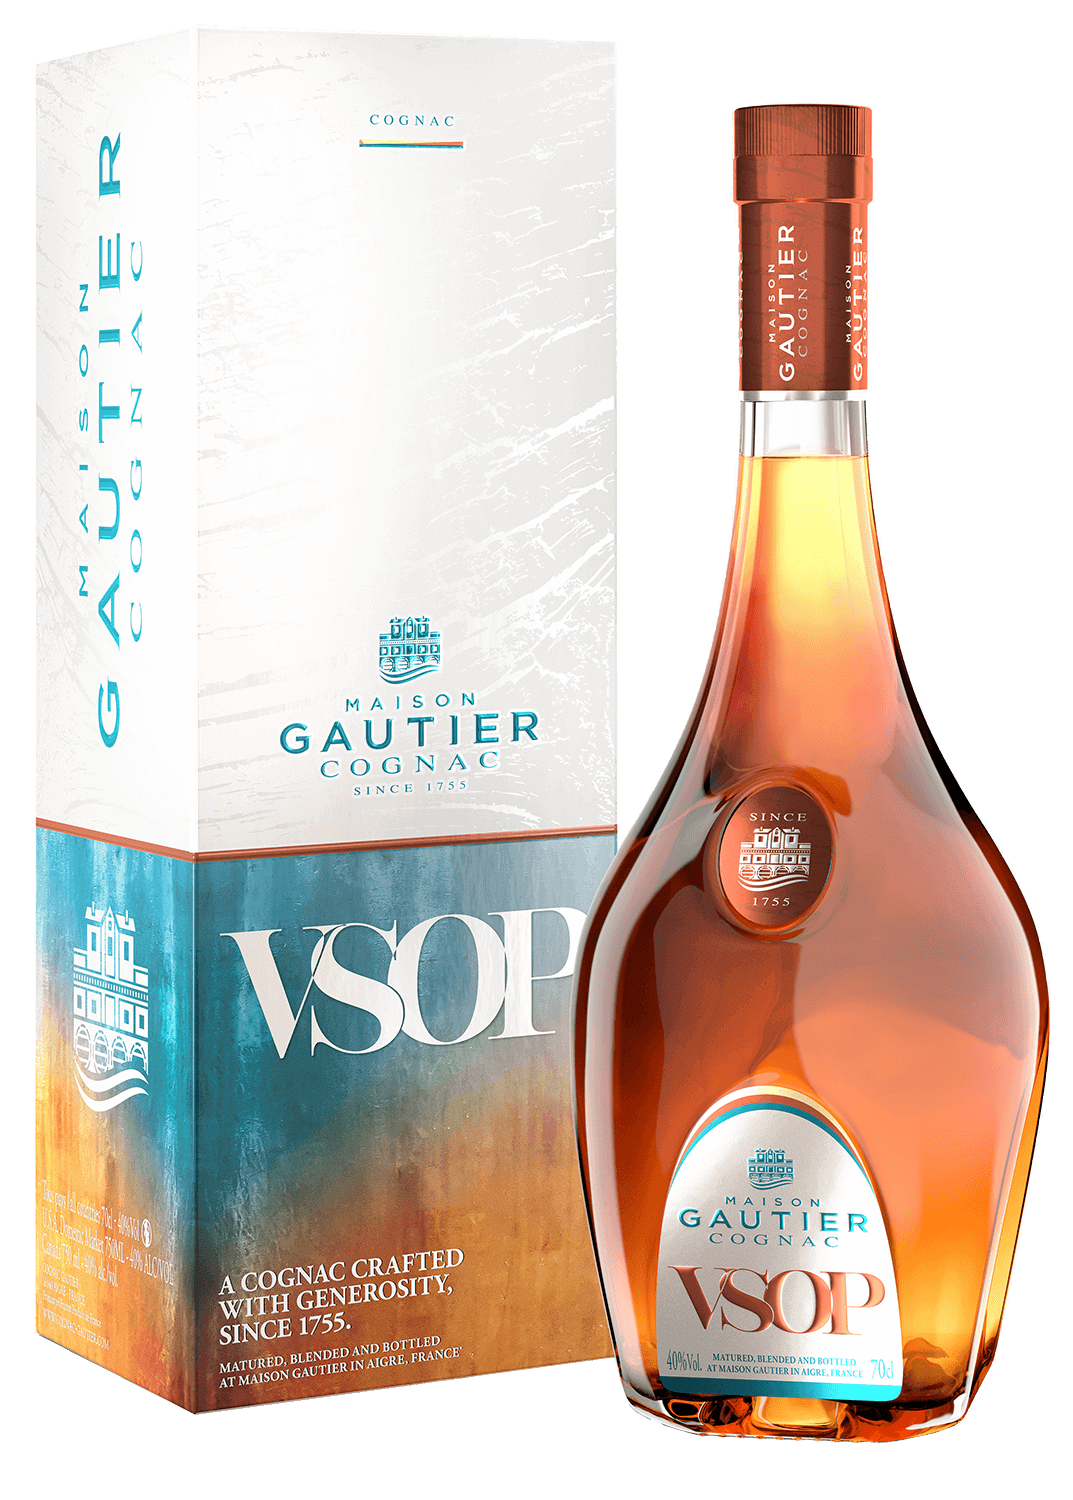 Cognac VSOP Maison Gautier (gift box) roullet cognac vsop gift box